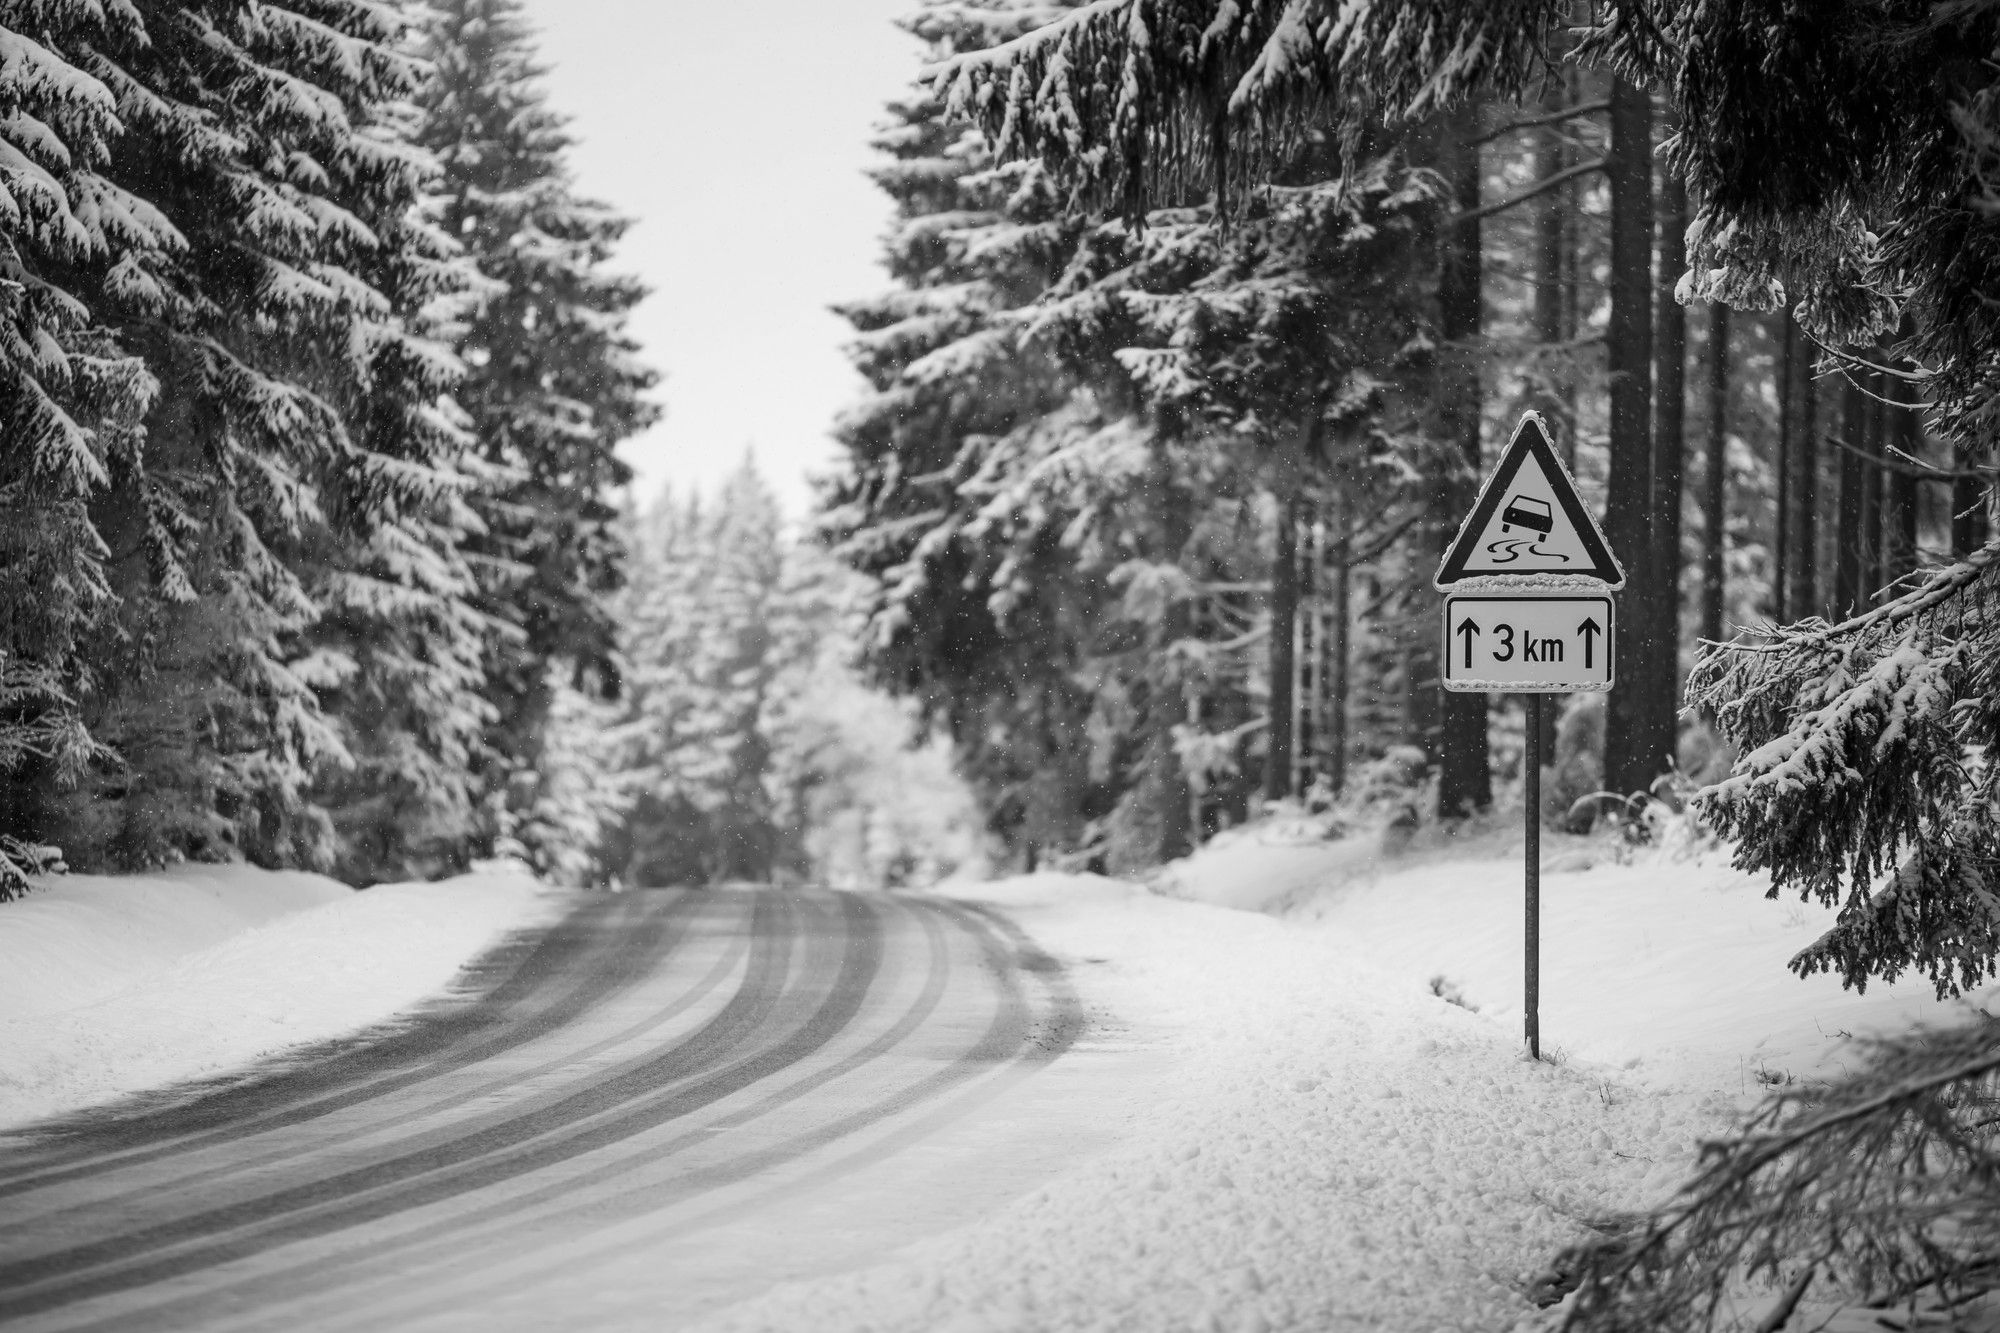 L’obligation des pneus neige en Isère dès le premier novembre : Priorité à la sécurité !